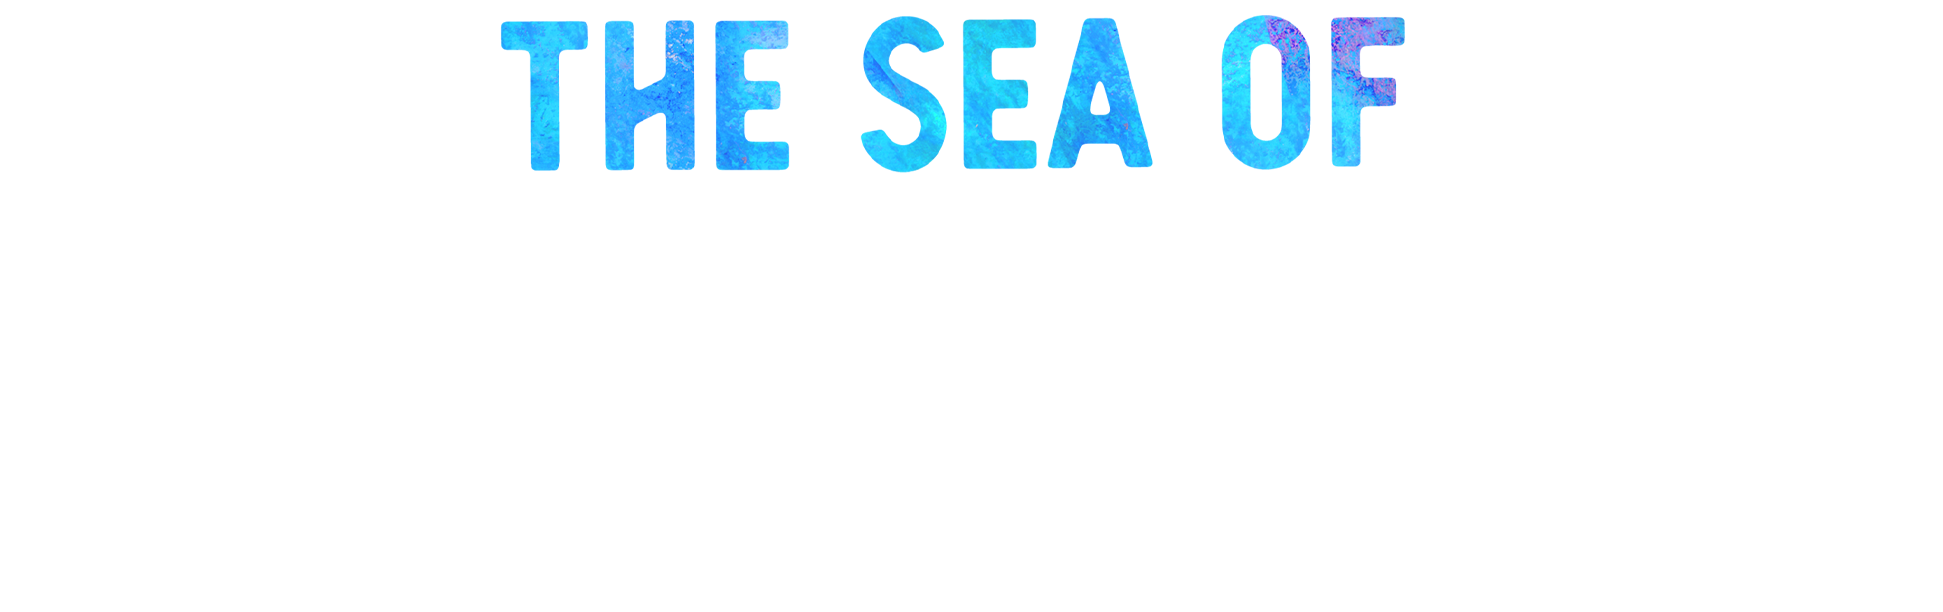 kickstarter sea of stars